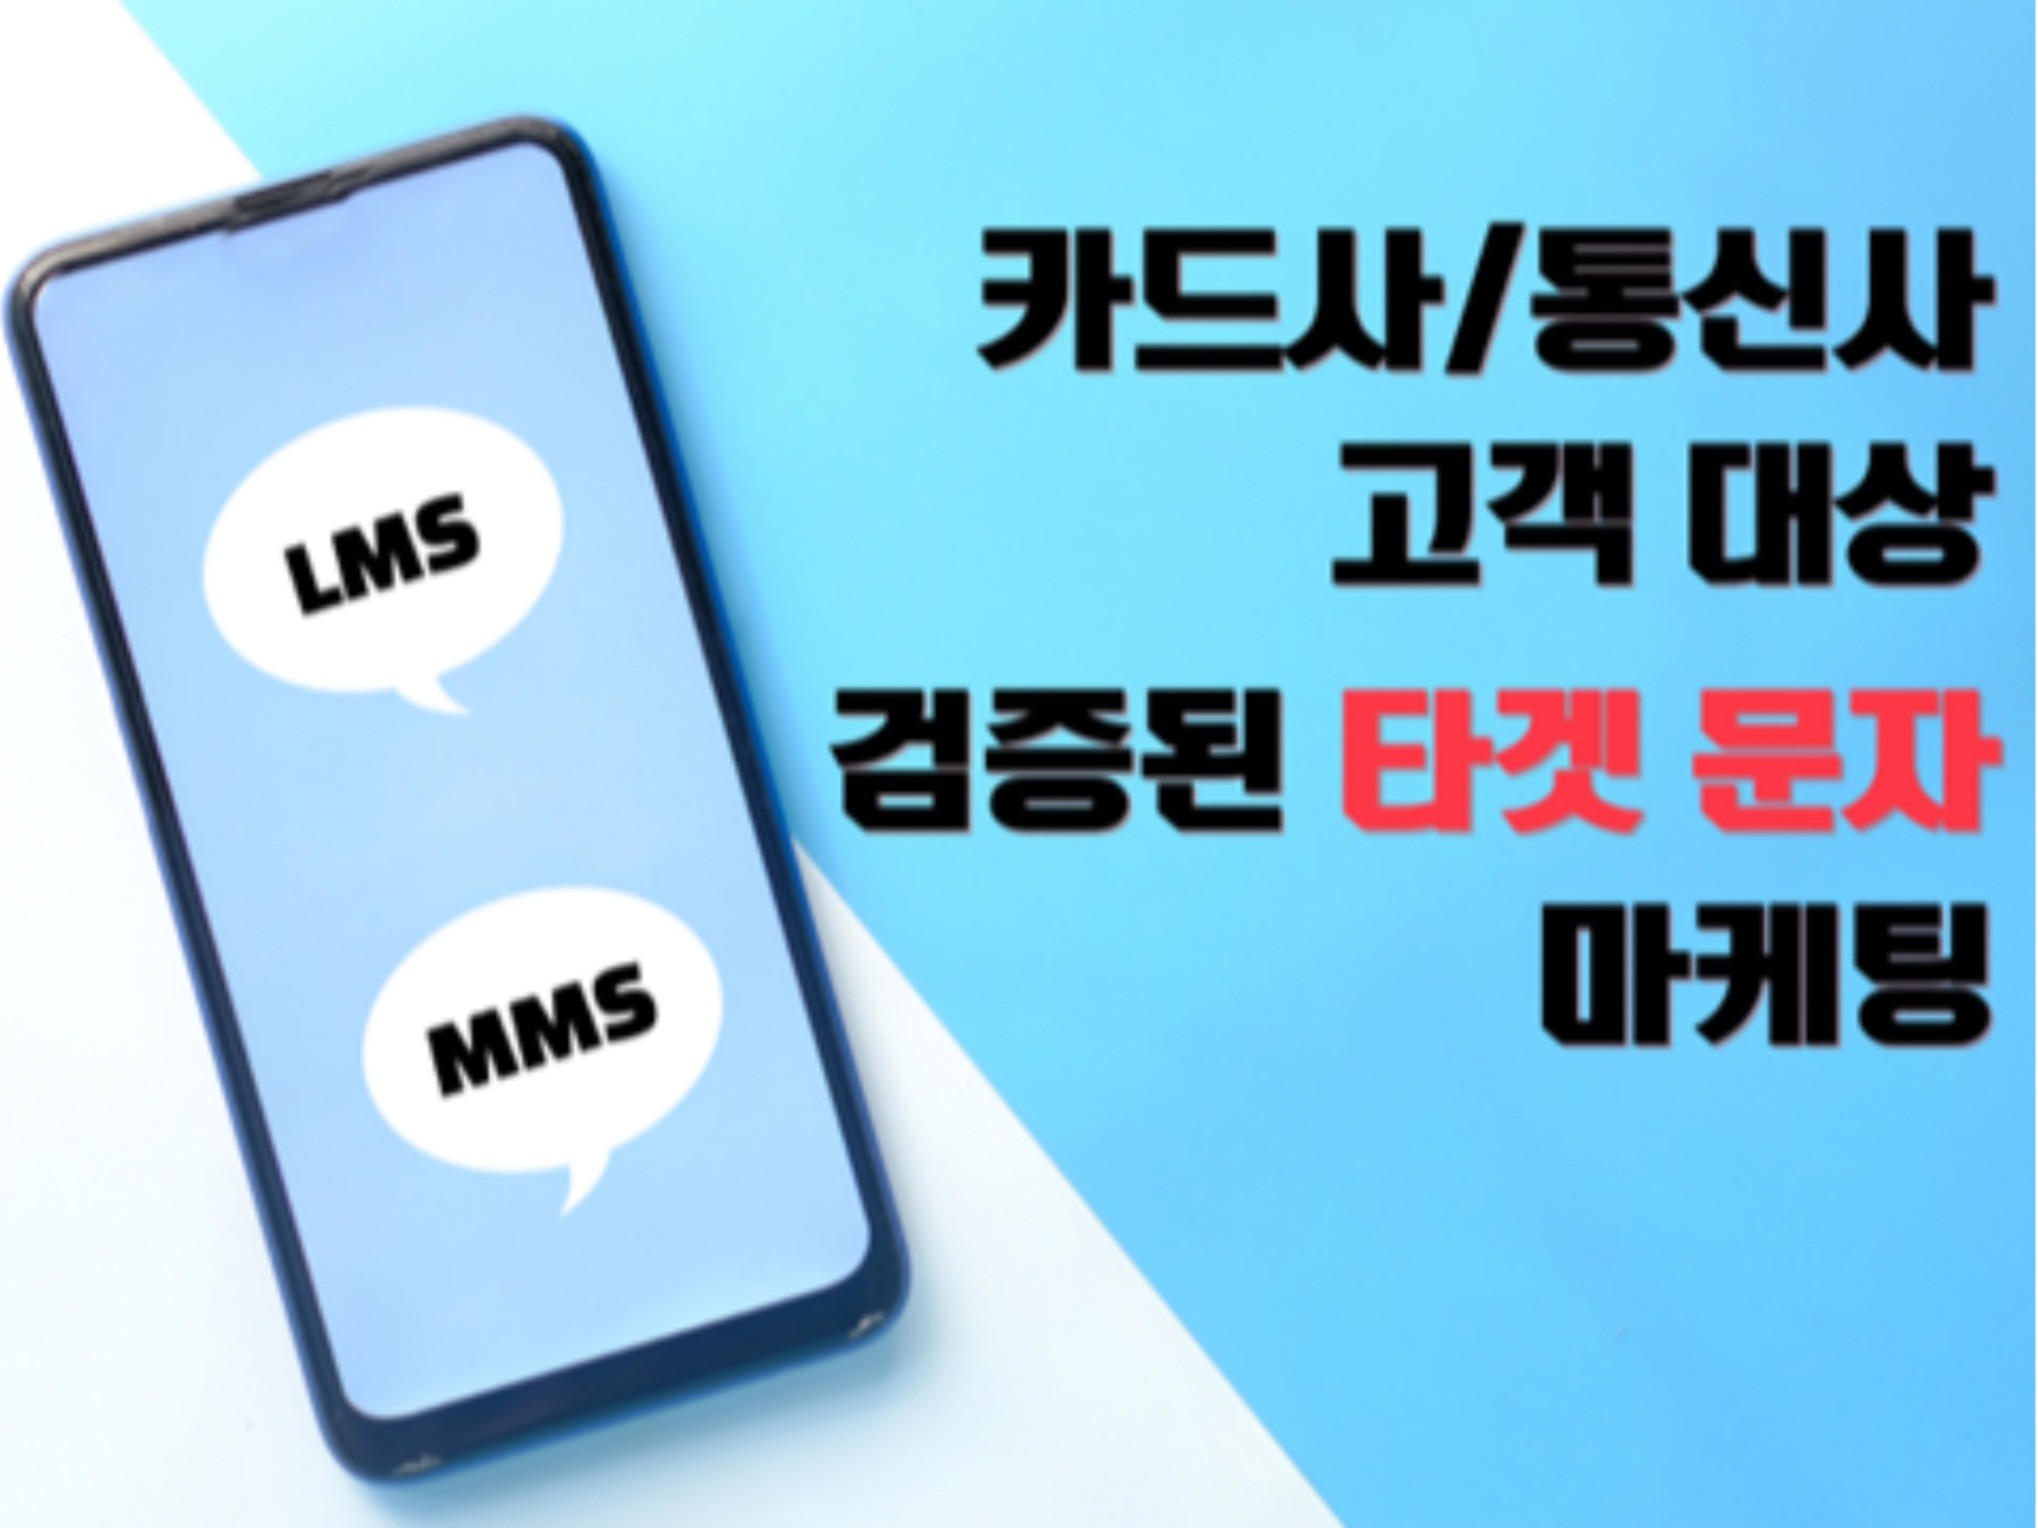 카드사/통신사/멤버십 타겟메시지 LMS, MMS 발송